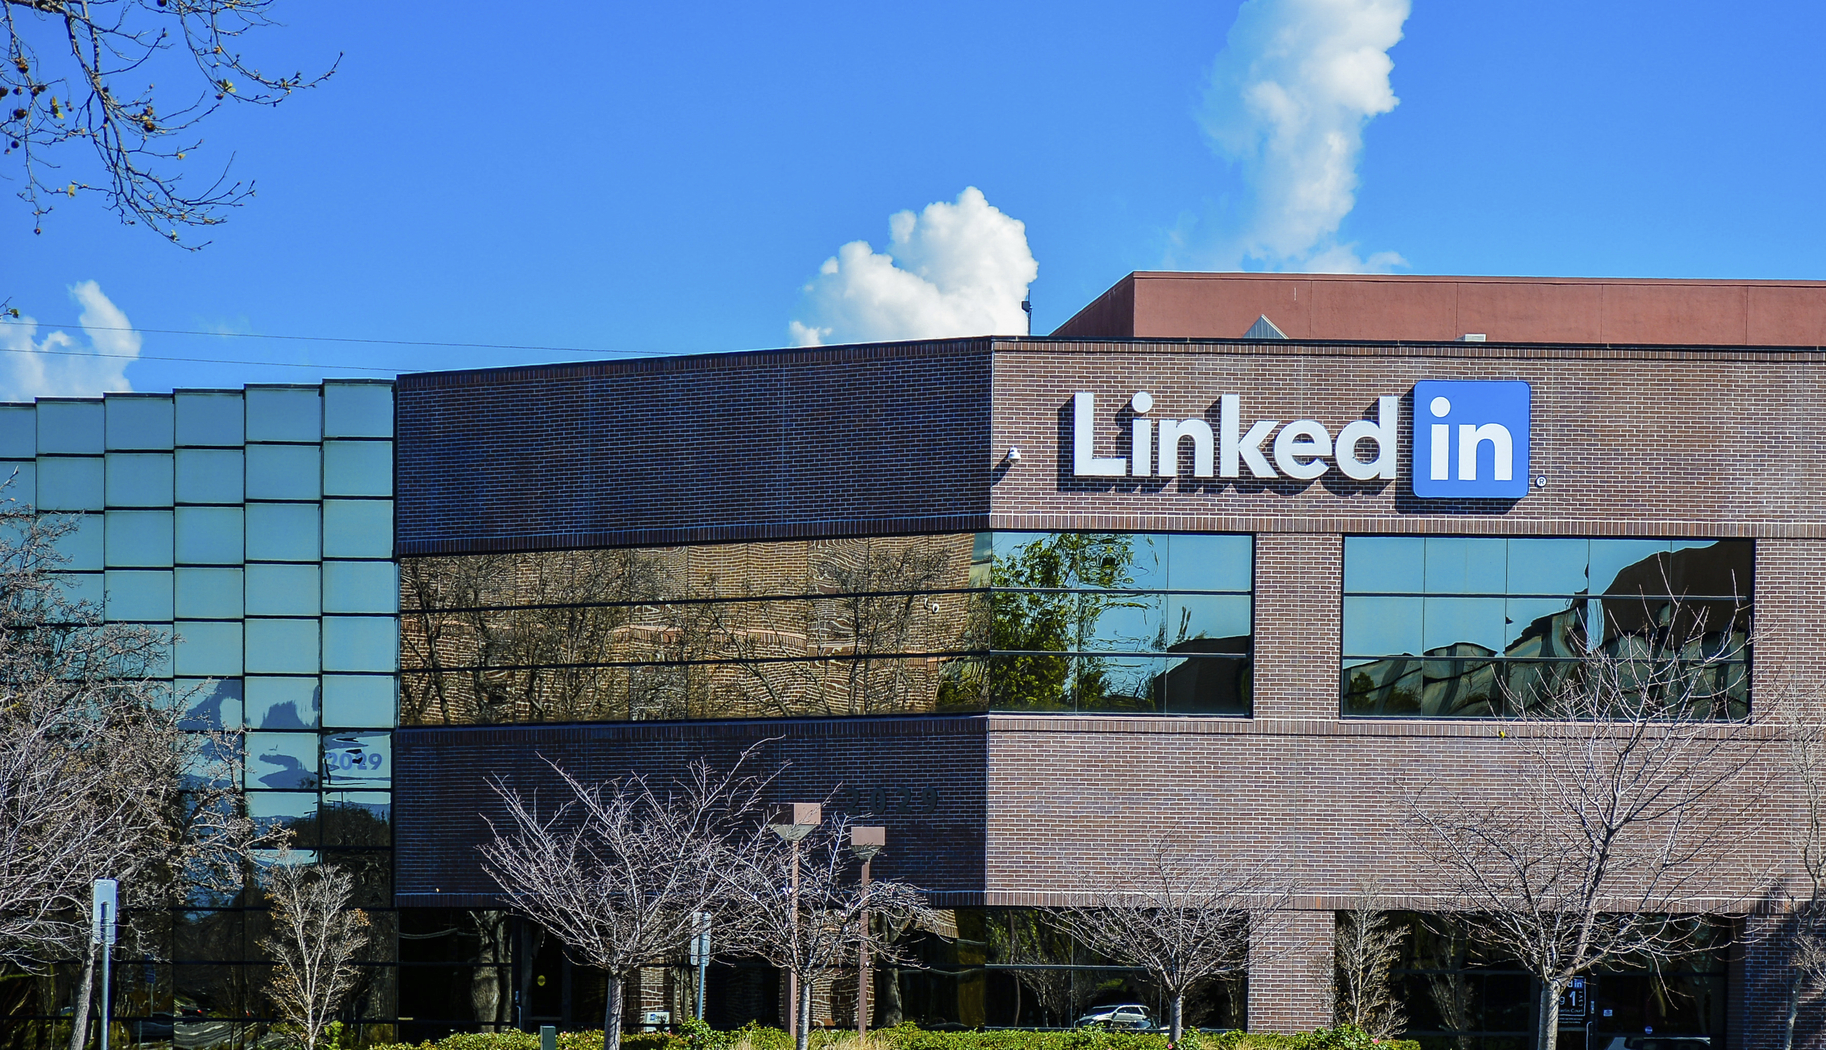 Fusioni e acquisizioni, lo strano caso Microsoft - LinkedIn